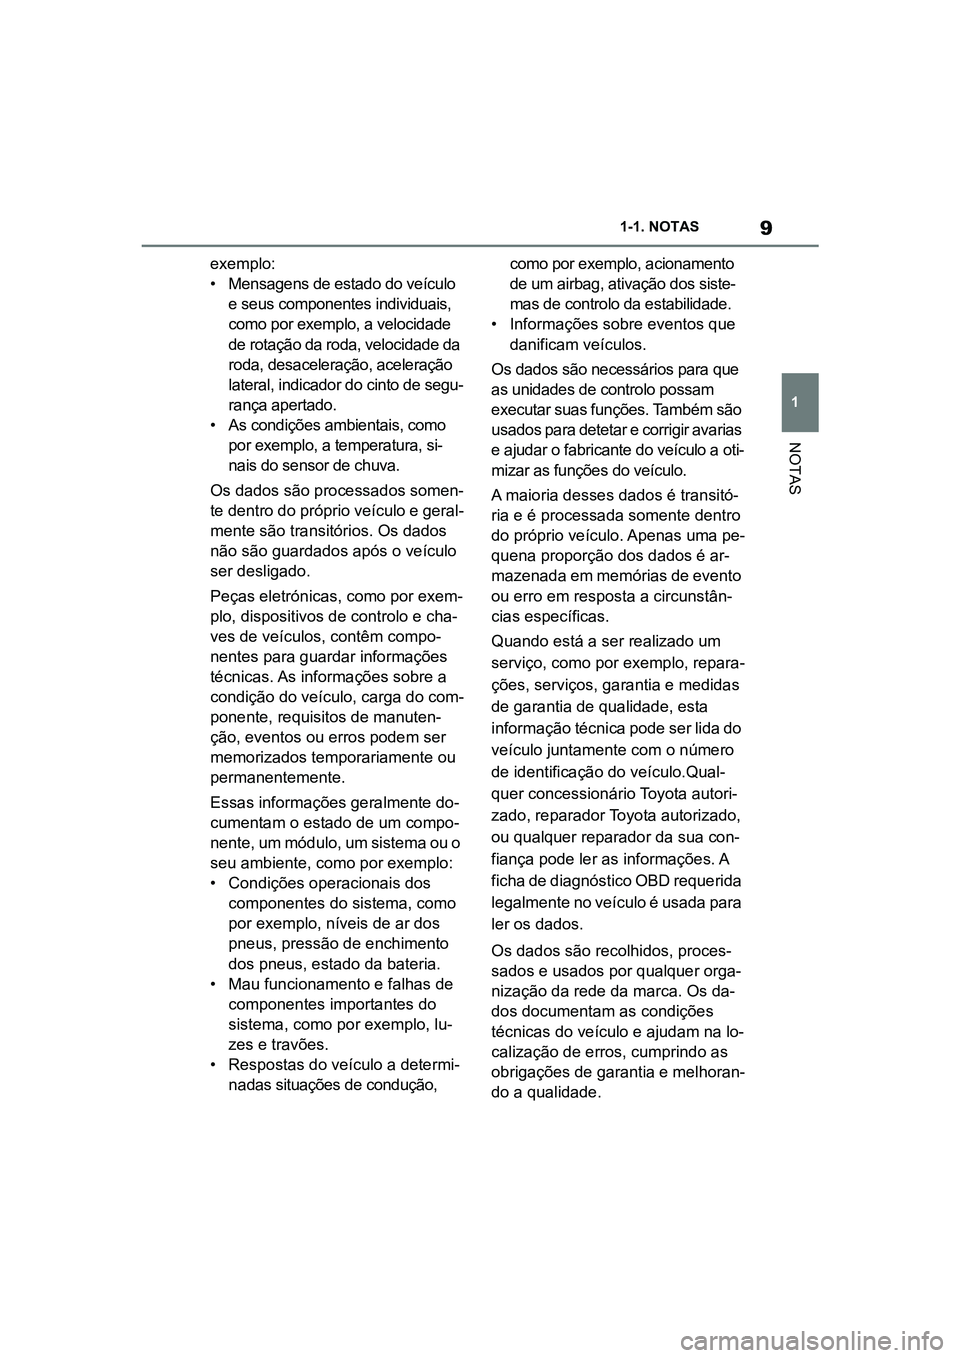 TOYOTA SUPRA 2019  Manual de utilização (in Portuguese) 9
1
Supra Owner's Manual 1-1. NOTAS
NOTAS
exemplo:
• Mensagens de estado do veículo 
e
  seus componentes individuais, 
como por exemplo, a velocidade 
de rotação da roda, velocidade da 
roda